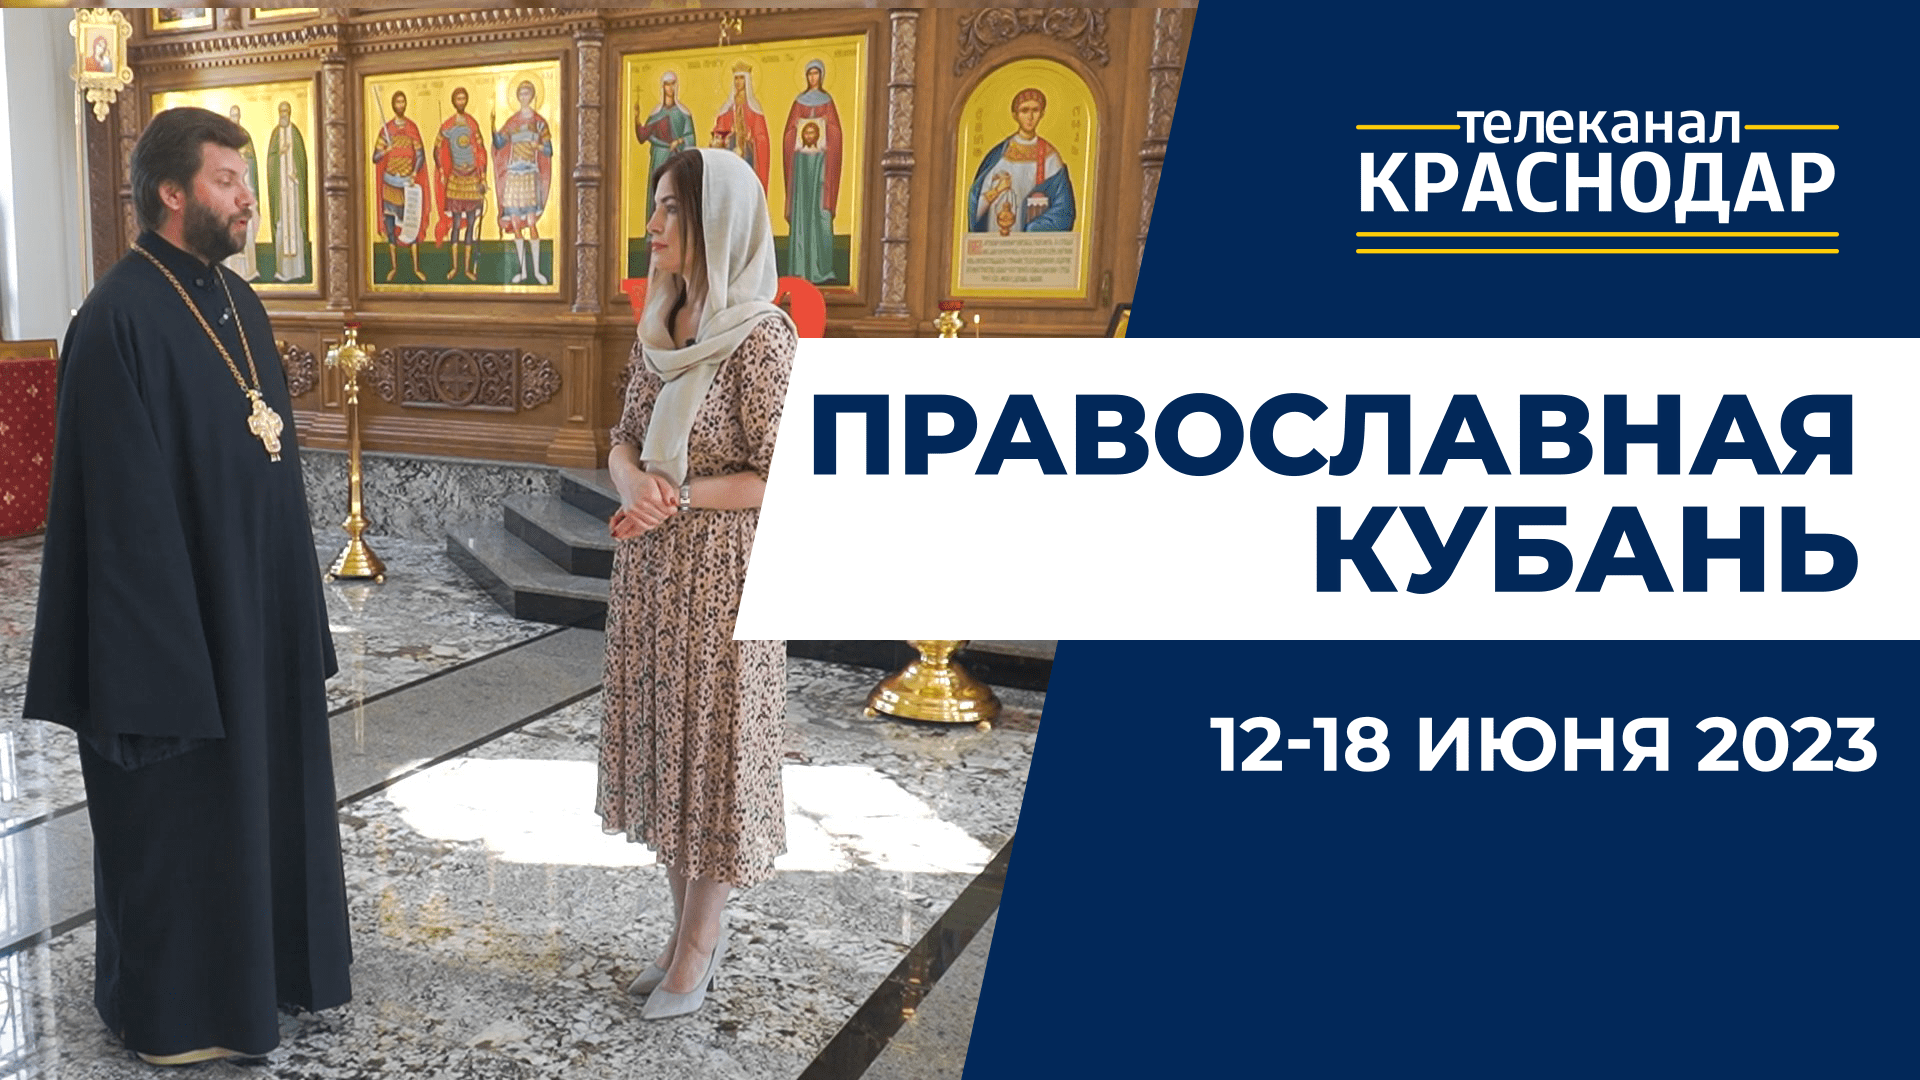 «Православная Кубань»: какие церковные праздники отмечают с 12 по 18 июня?